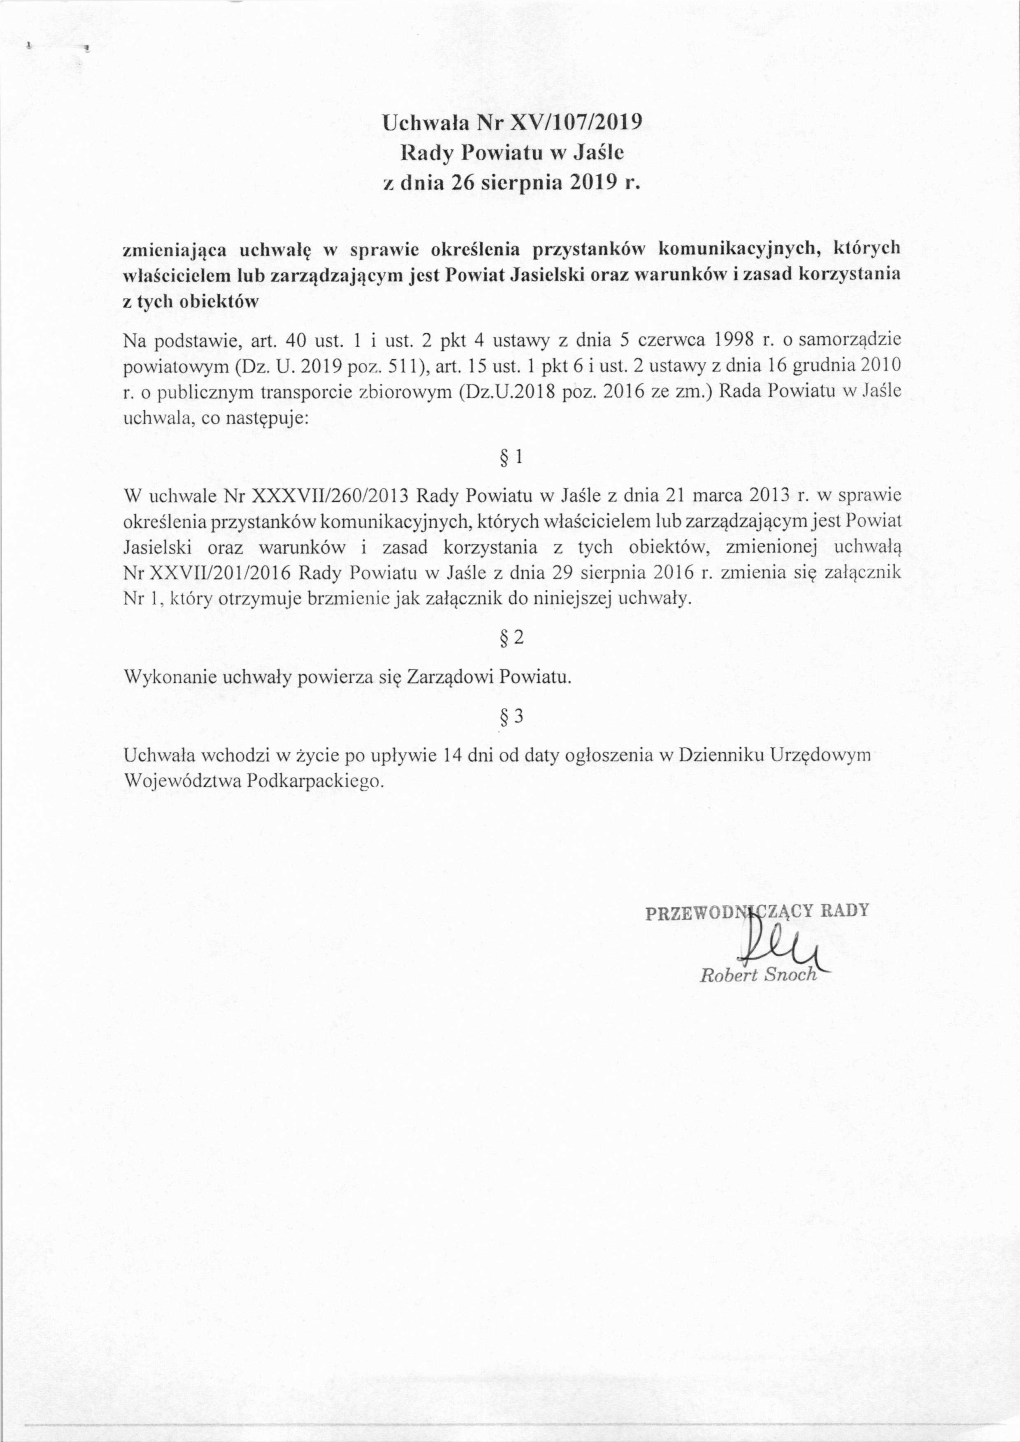 Uchwała Nr XV/107/2019 Rady Powiatu W Jaśle Z Dnia 26 Sierpnia 2019 R